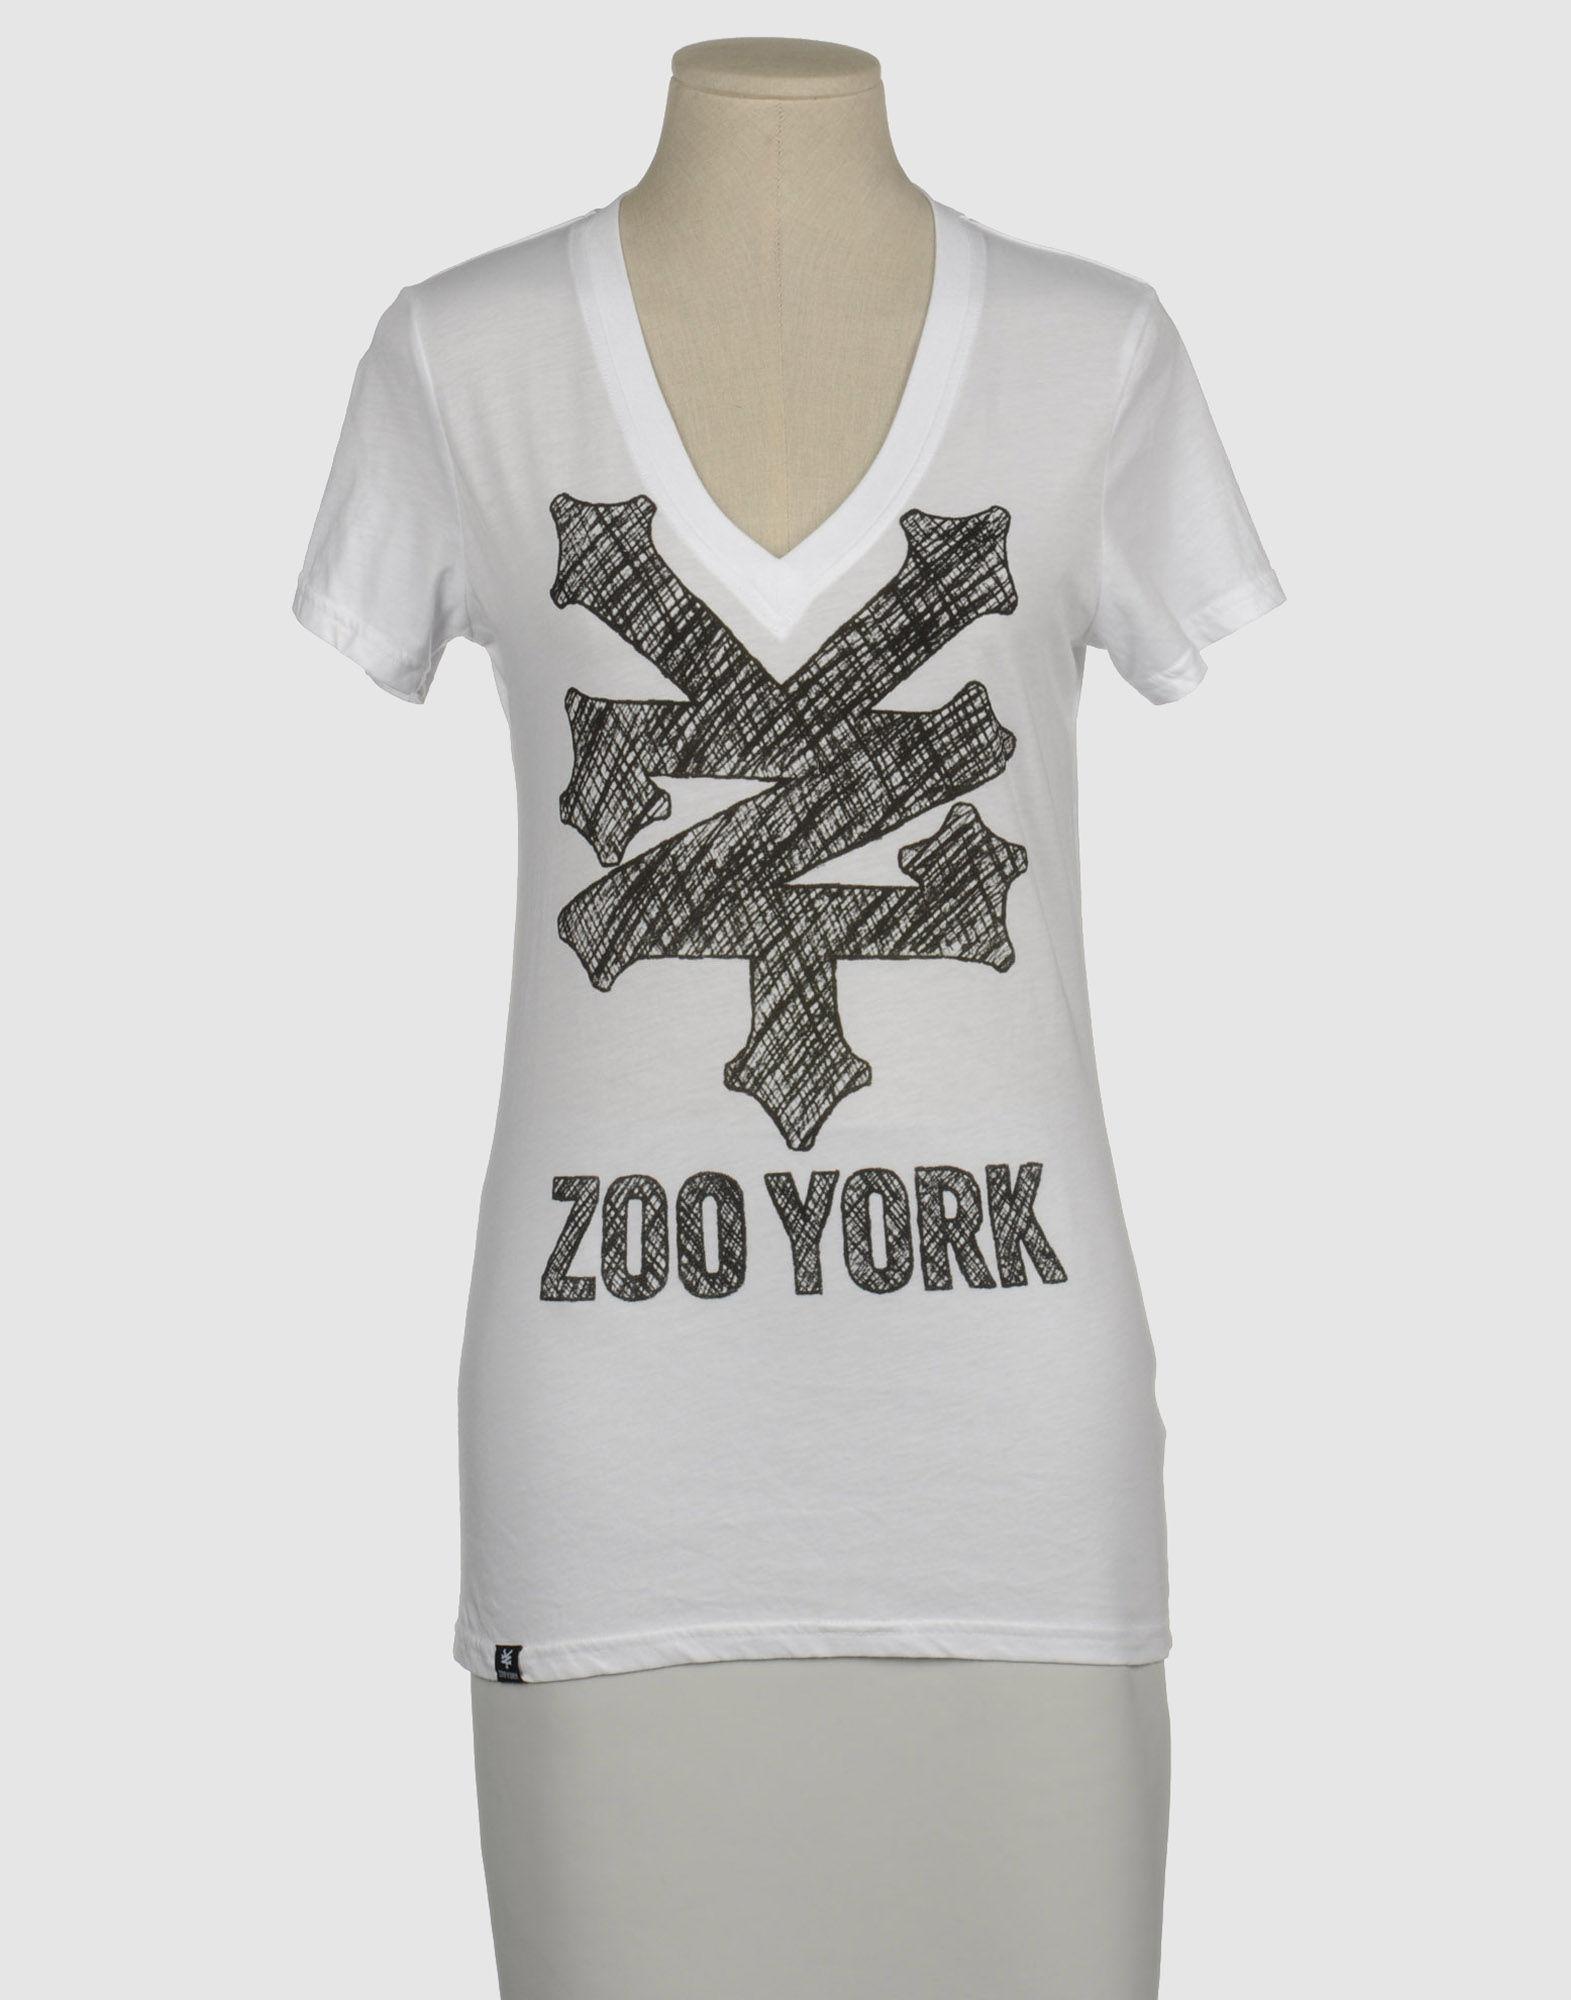 Foto zoo york camisetas de manga corta
